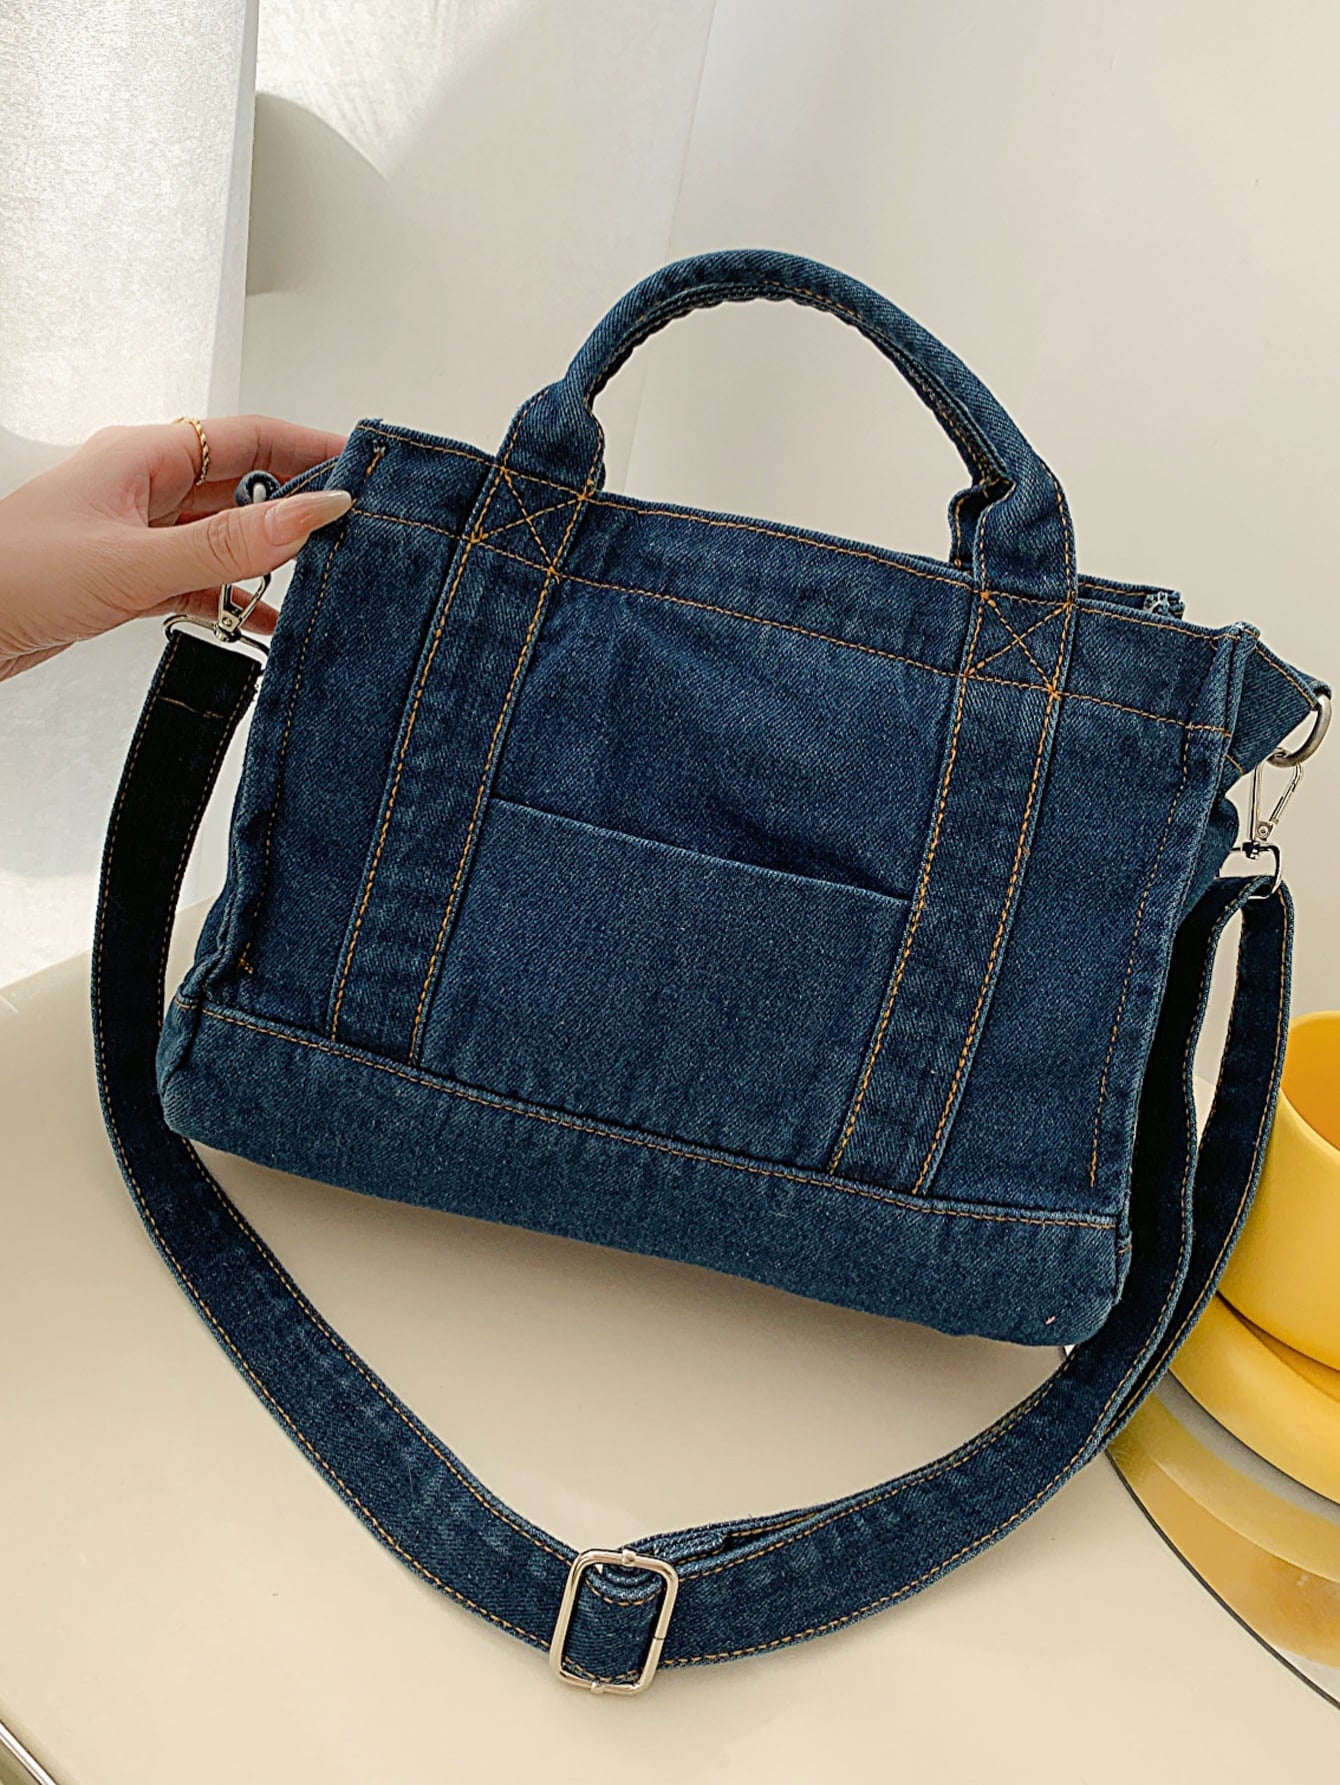 denim shoulder handbag, dark blue, tilted view, woman's hand on left side